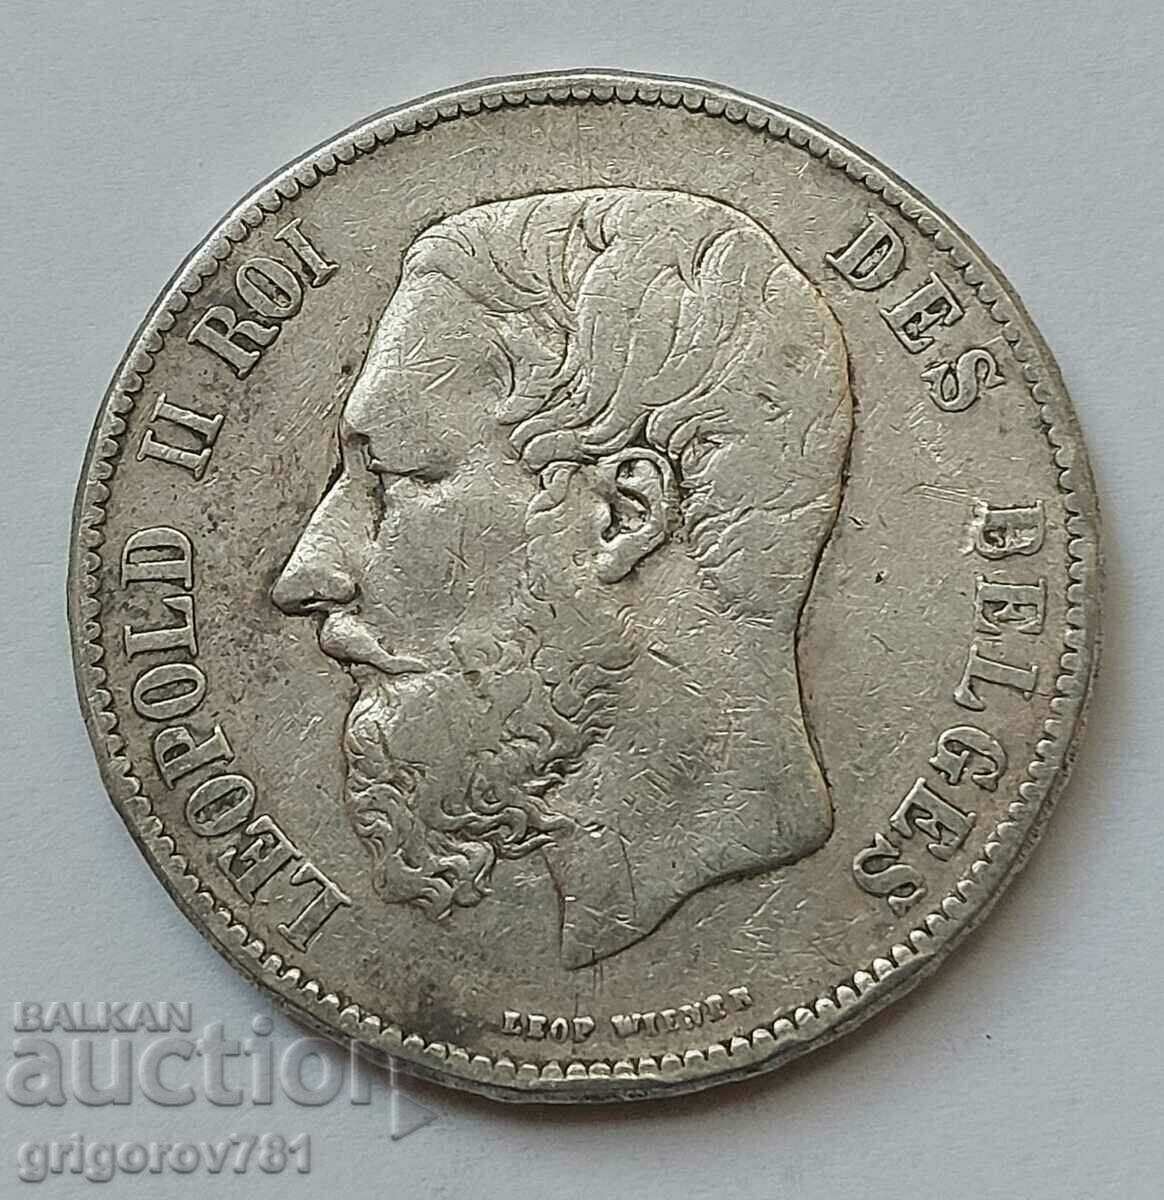 Ασημένιο 5 Φράγκα Βέλγιο 1870 Ασημένιο νόμισμα #170